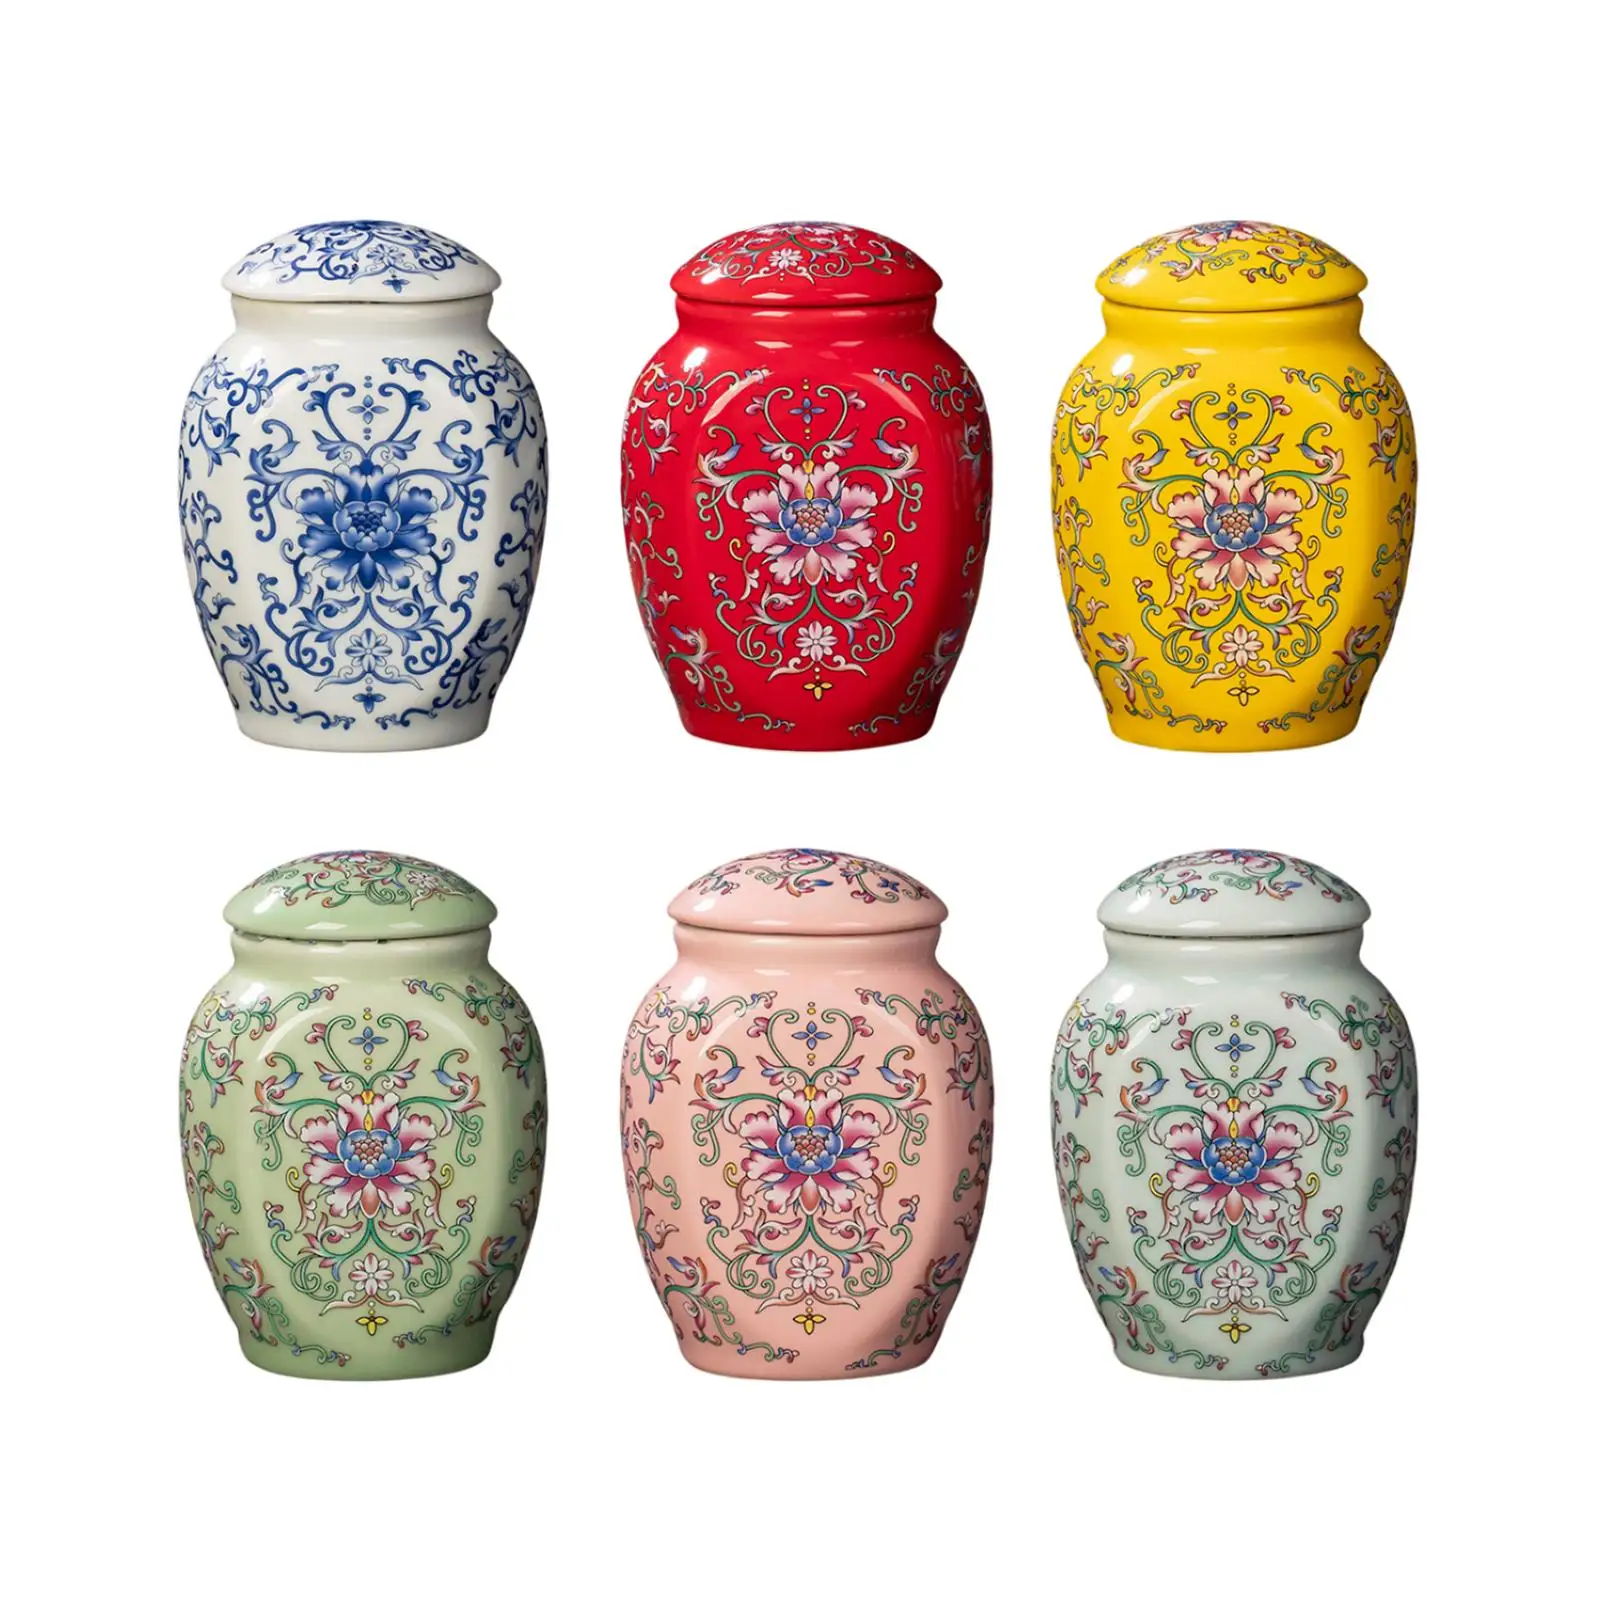 Porcelain Temple Ginger Jar Tea Storage Jar with Lid Decoration Ceramic Vase